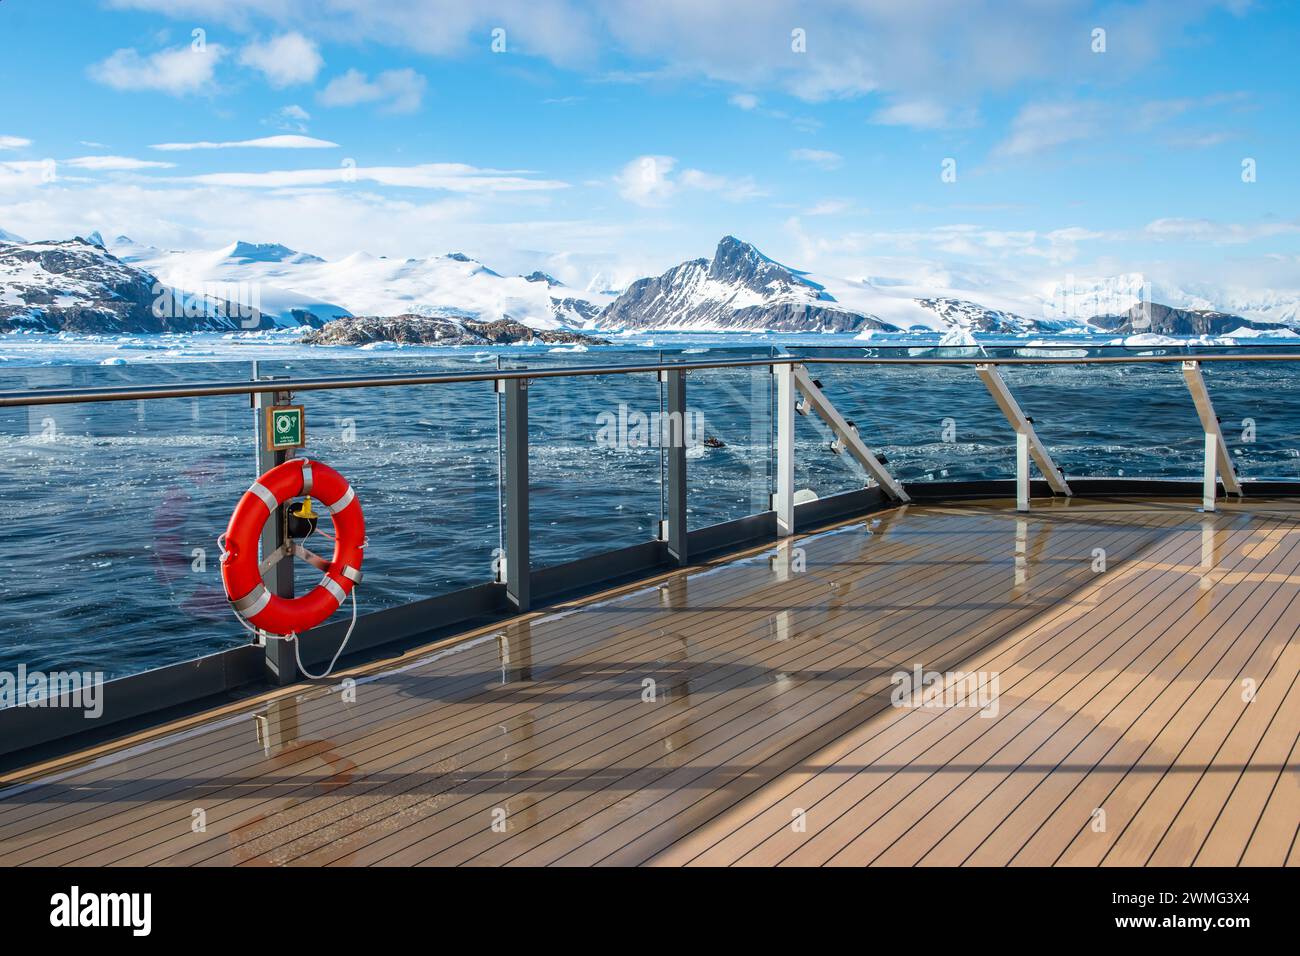 Pont de bateau de croisière avec garde-corps en Antarctique. Fond de montagne de neige. Concept de vacances de croisière d'hiver. Banque D'Images